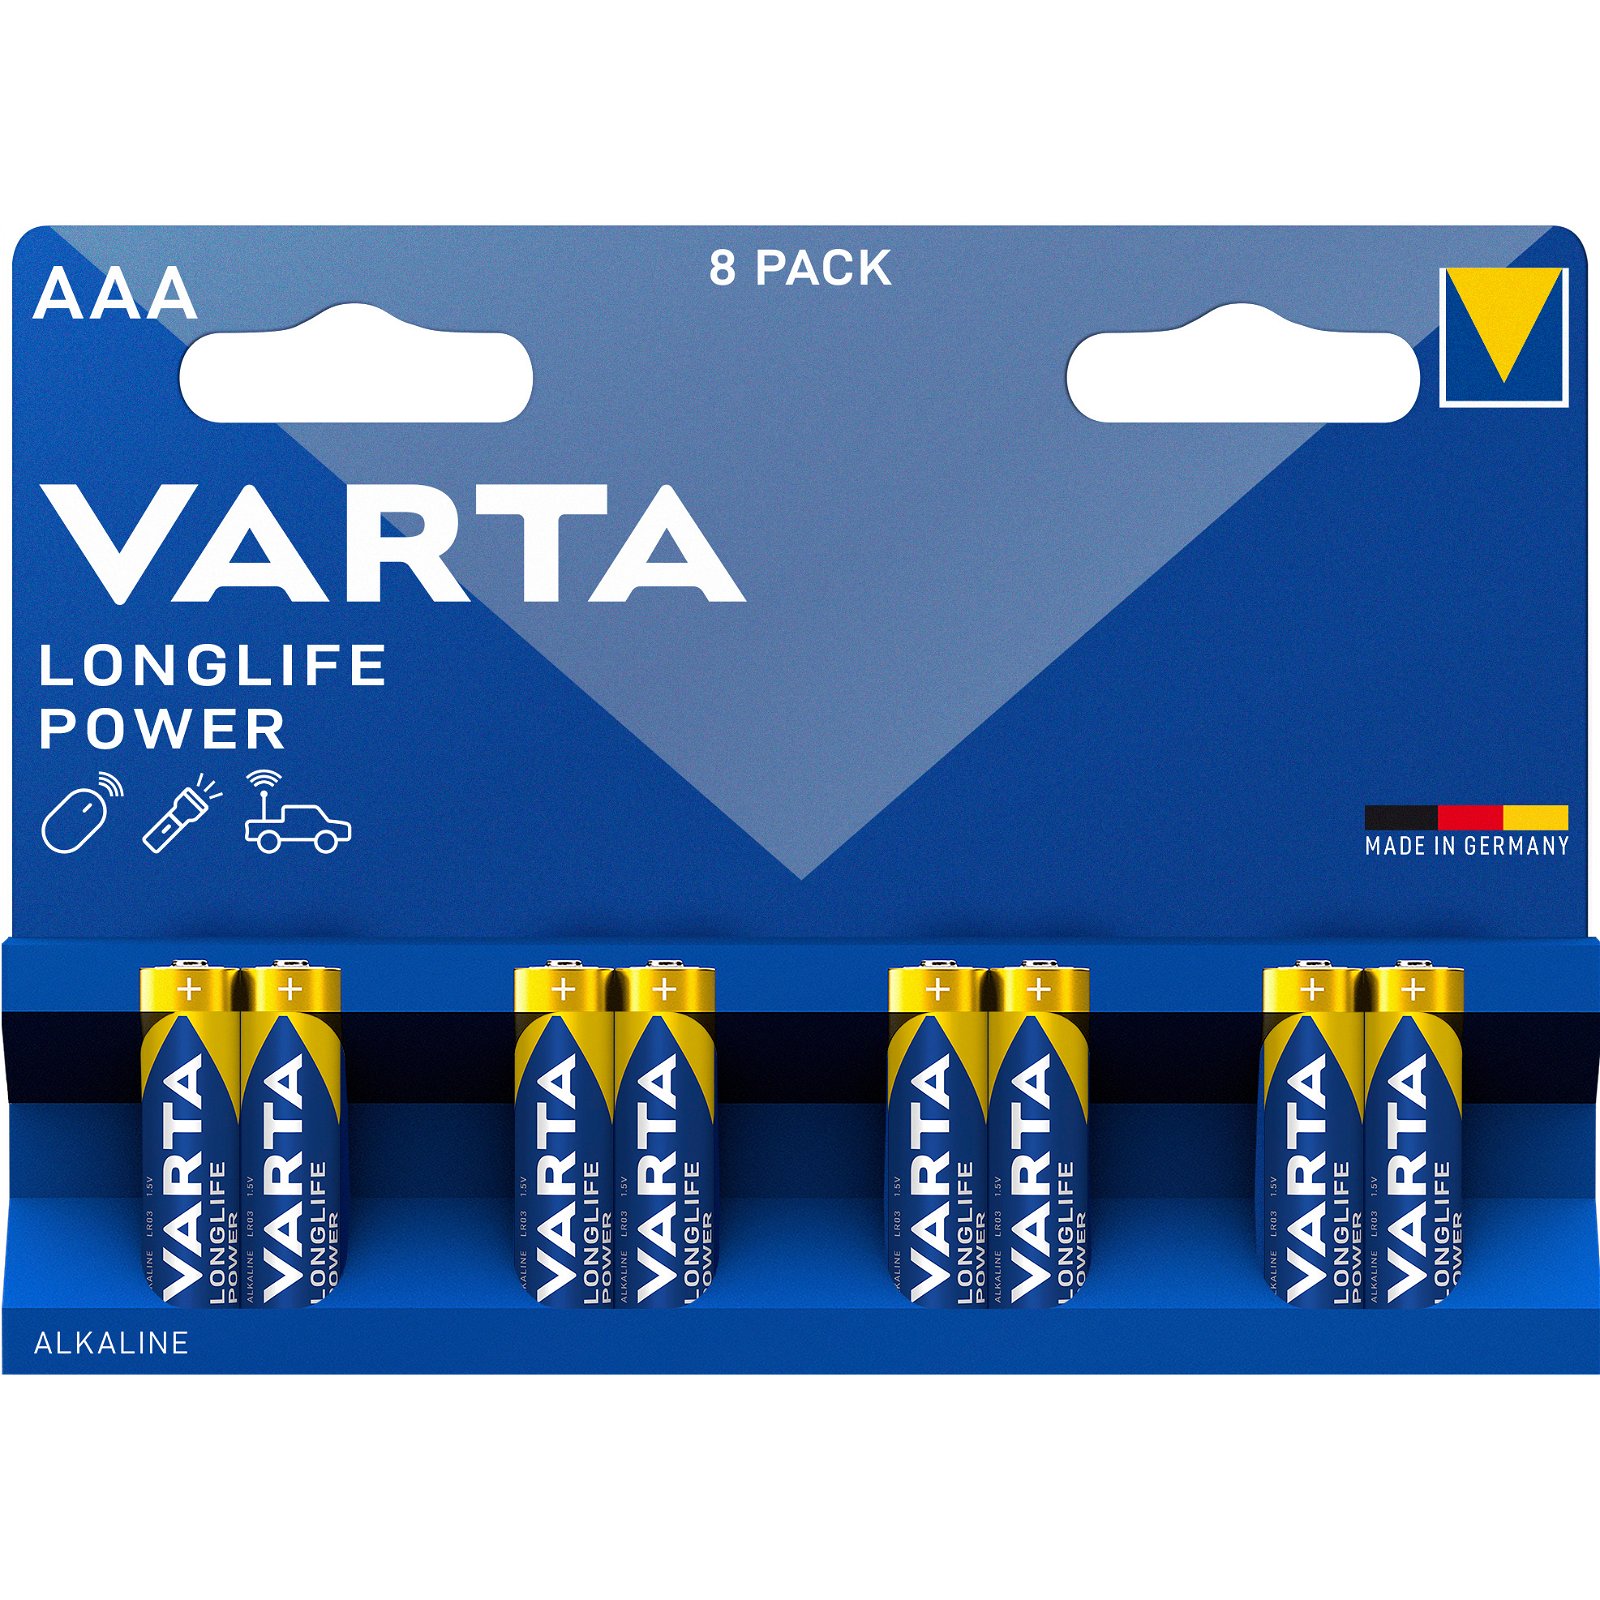 VARTA LongLife Power batteri AAA/LR03 1.5 v 8 stk